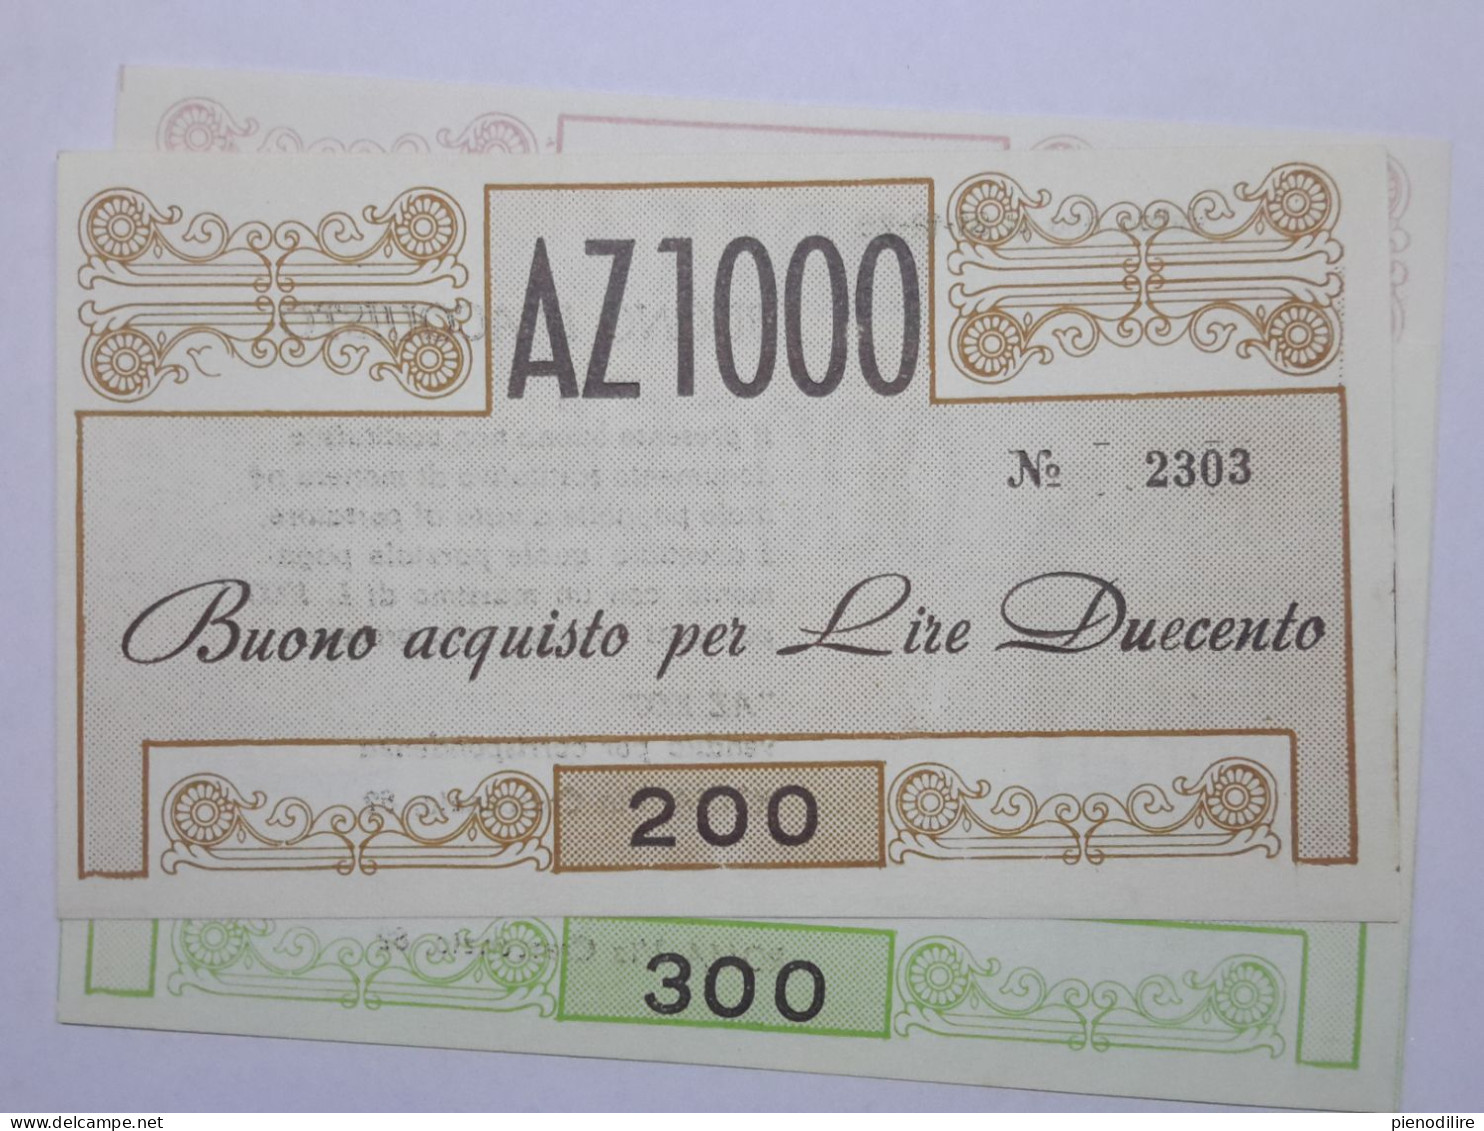 LOTTO 5Pz. 100 100 200 300 400 LIRE BUONI ACQUISTO AZ1000 VALIDO FINO AL 31.12.1976 (A.2) - [10] Checks And Mini-checks